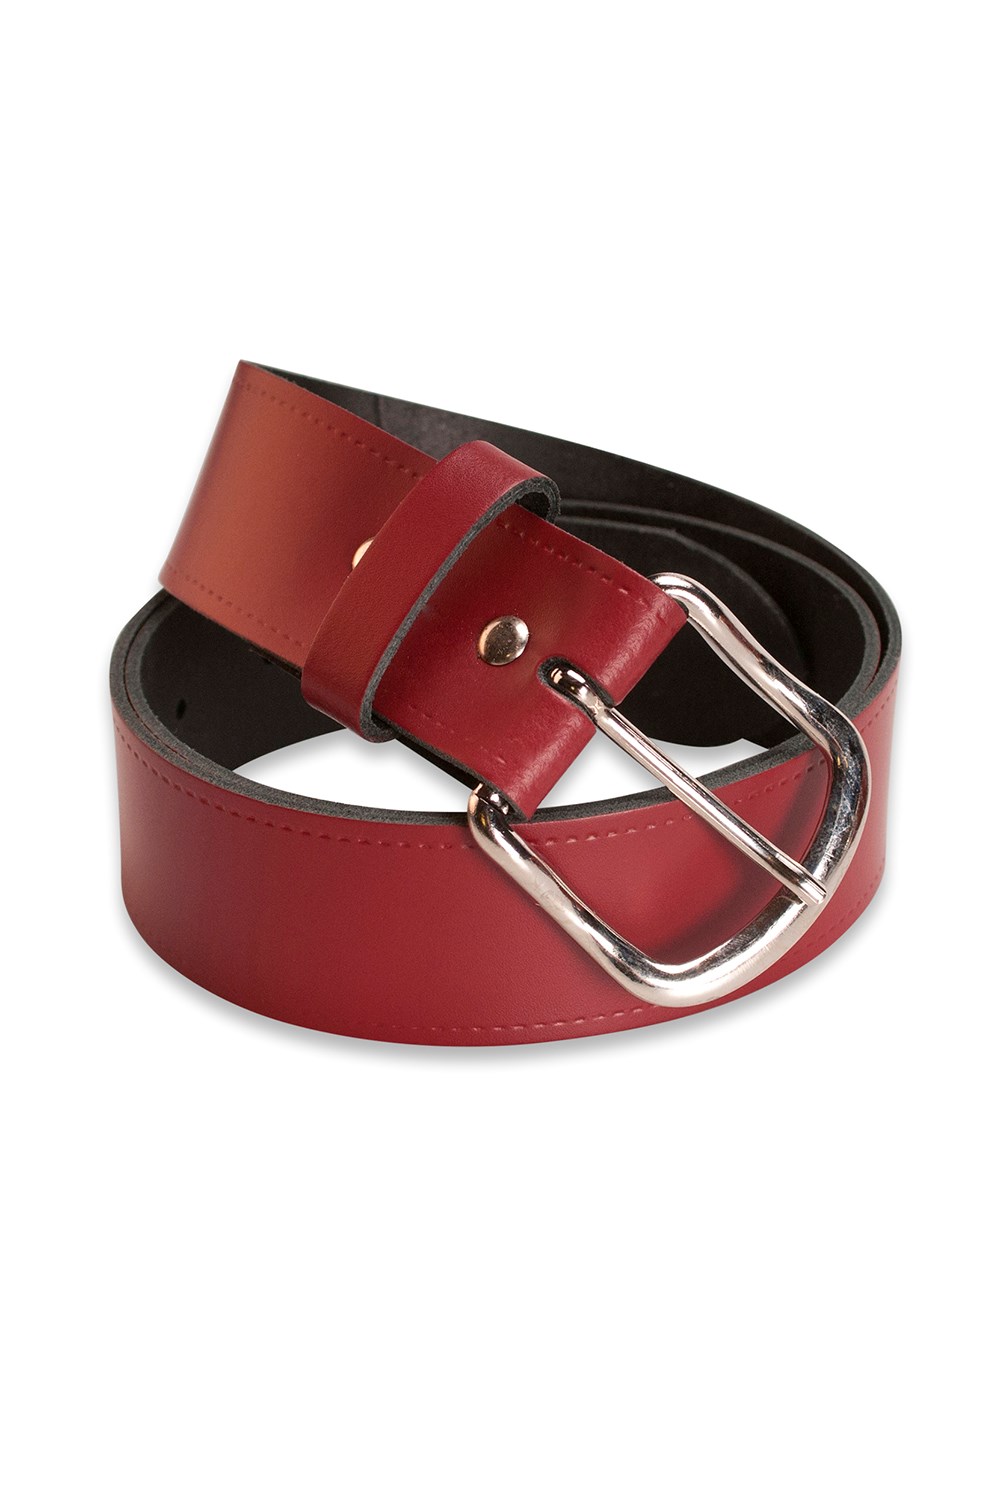 Womens Leather Belt 1. 5" Width -